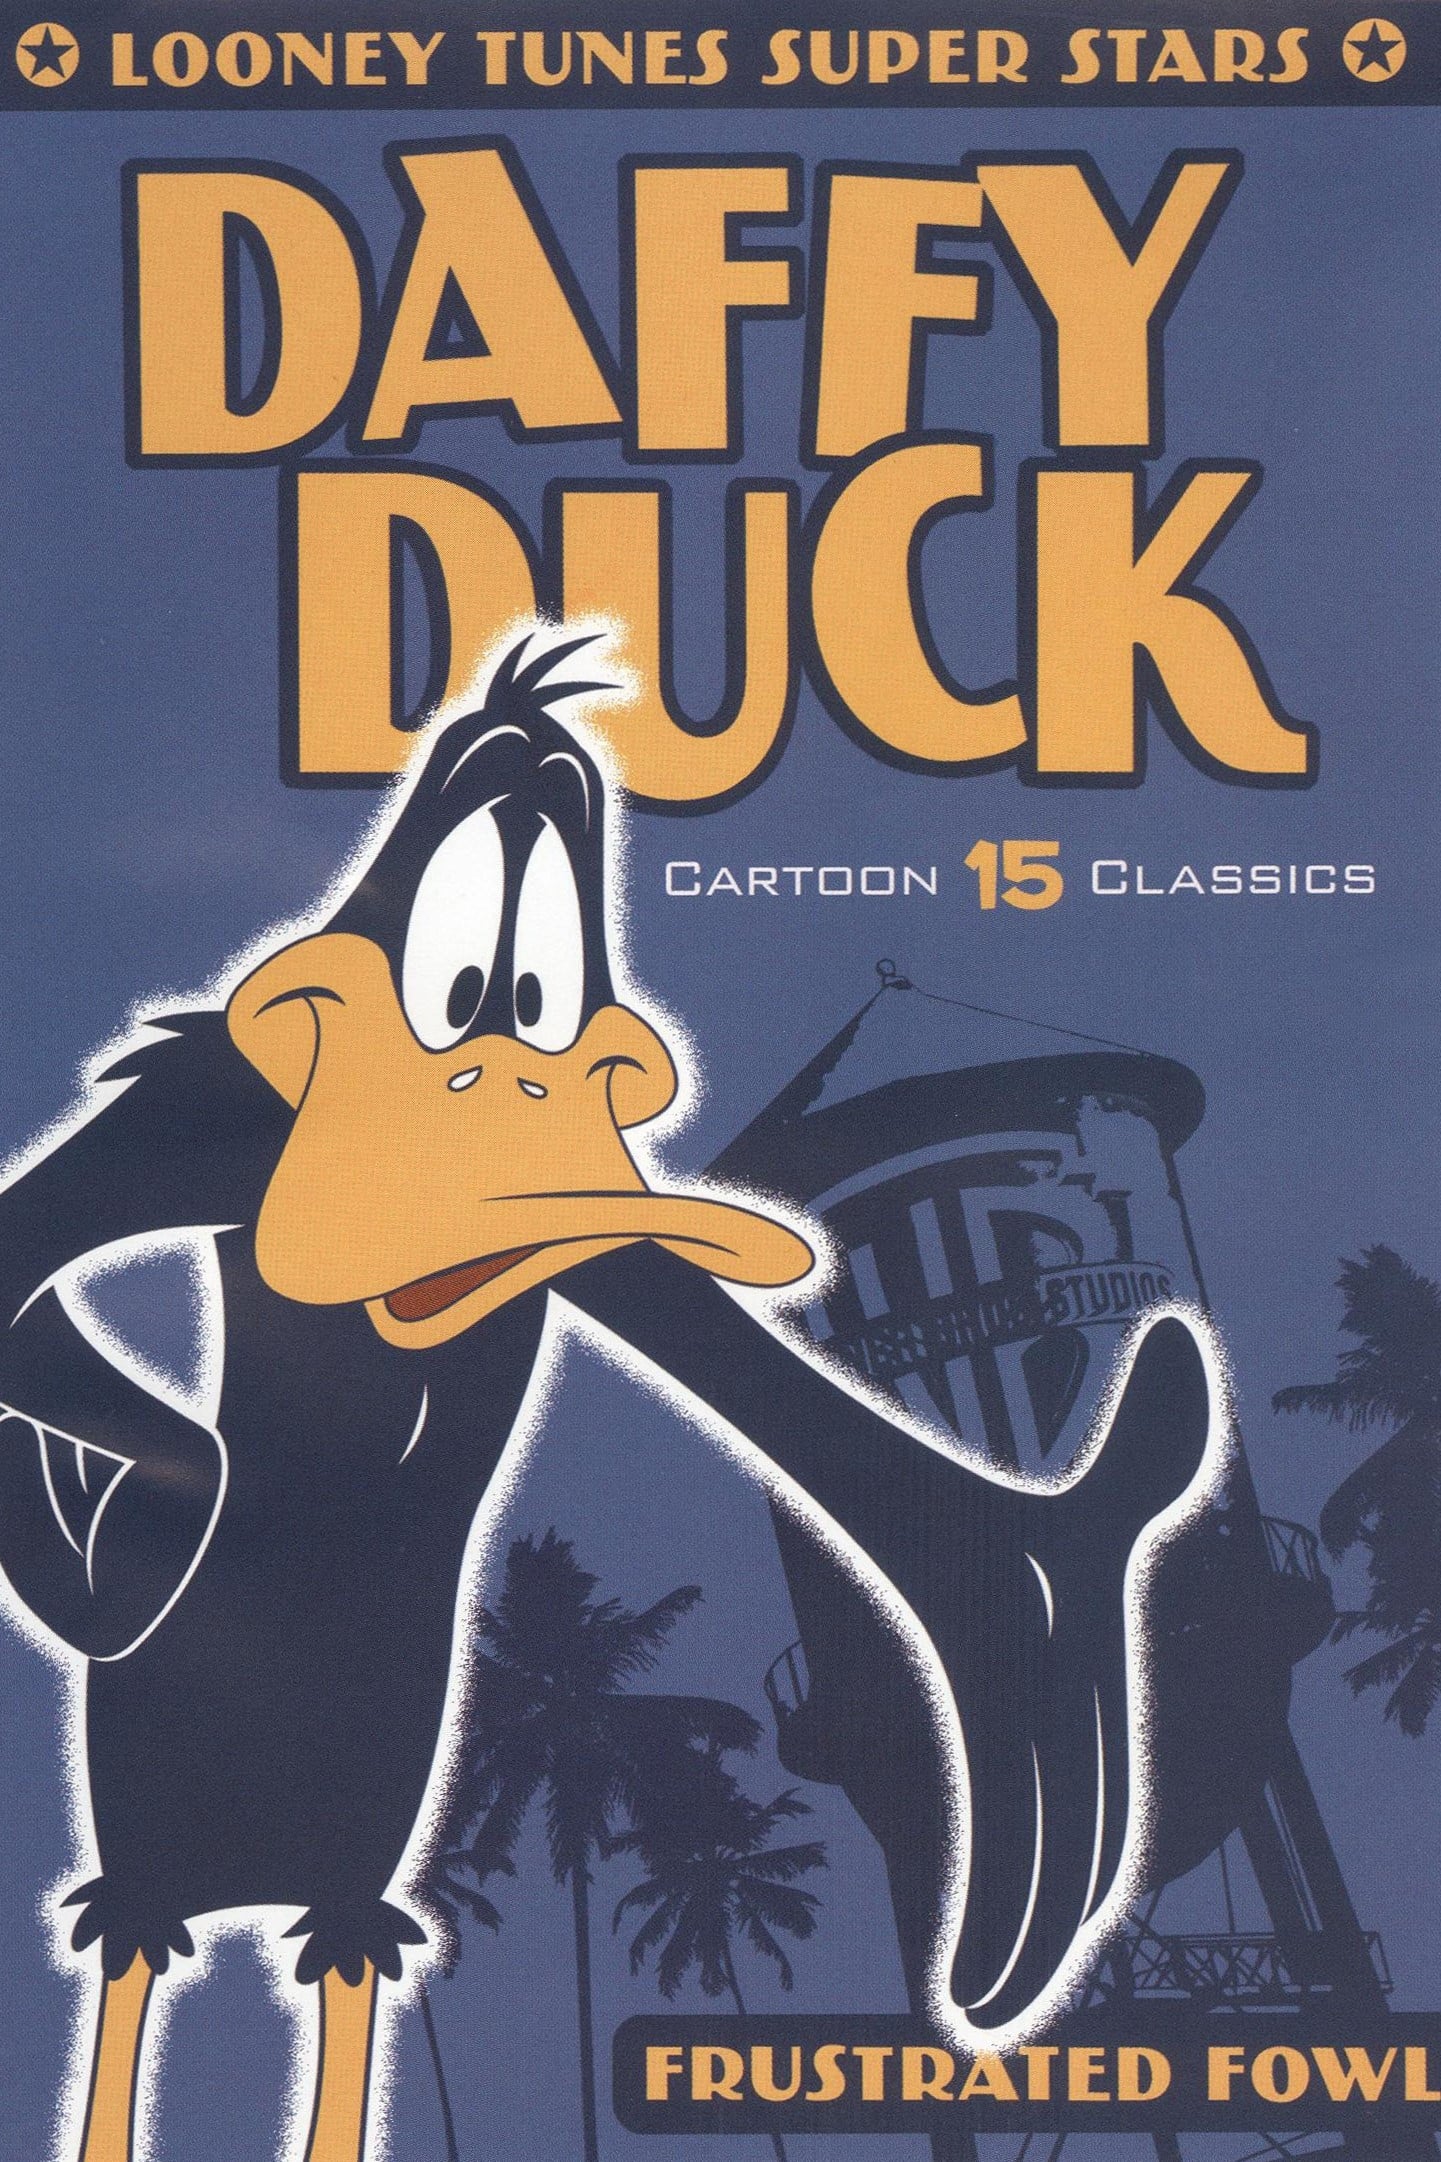 Super Estrelas Looney Tunes: Daffy Duck, Pato Frustrado